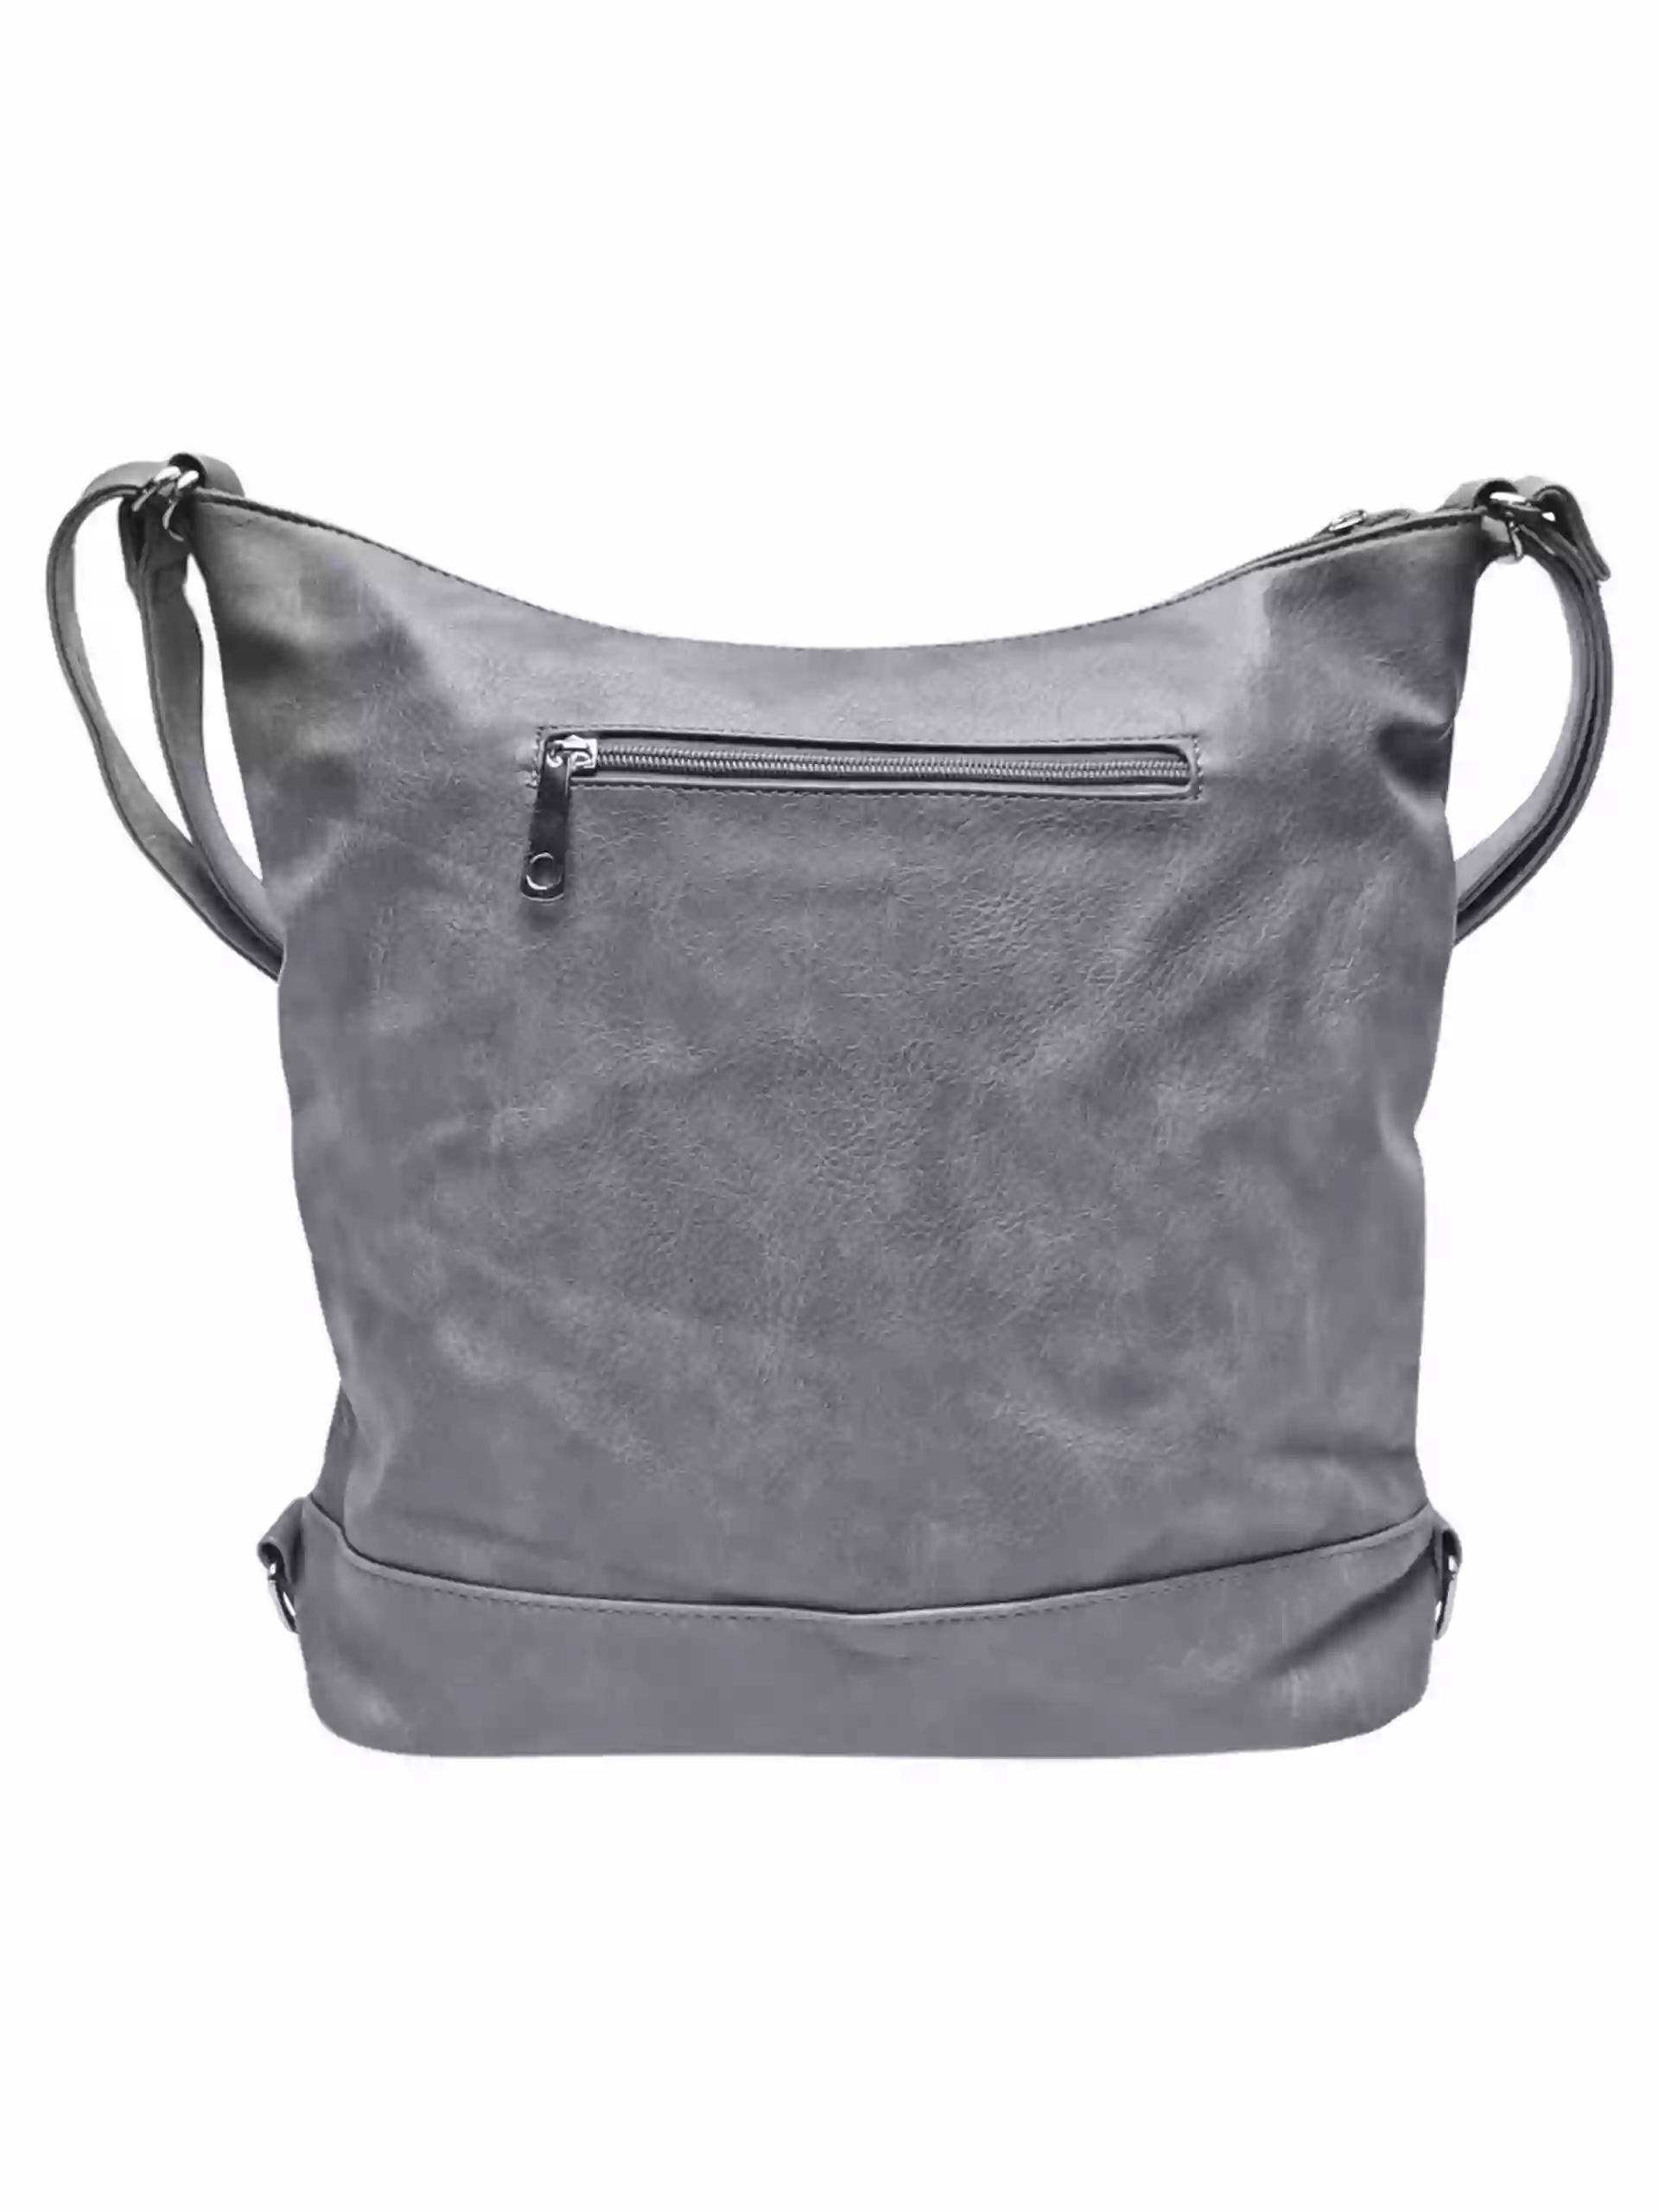 Velký středně šedý kabelko-batoh s kapsami, Tapple, H23906, zadní strana kabelko-batohu